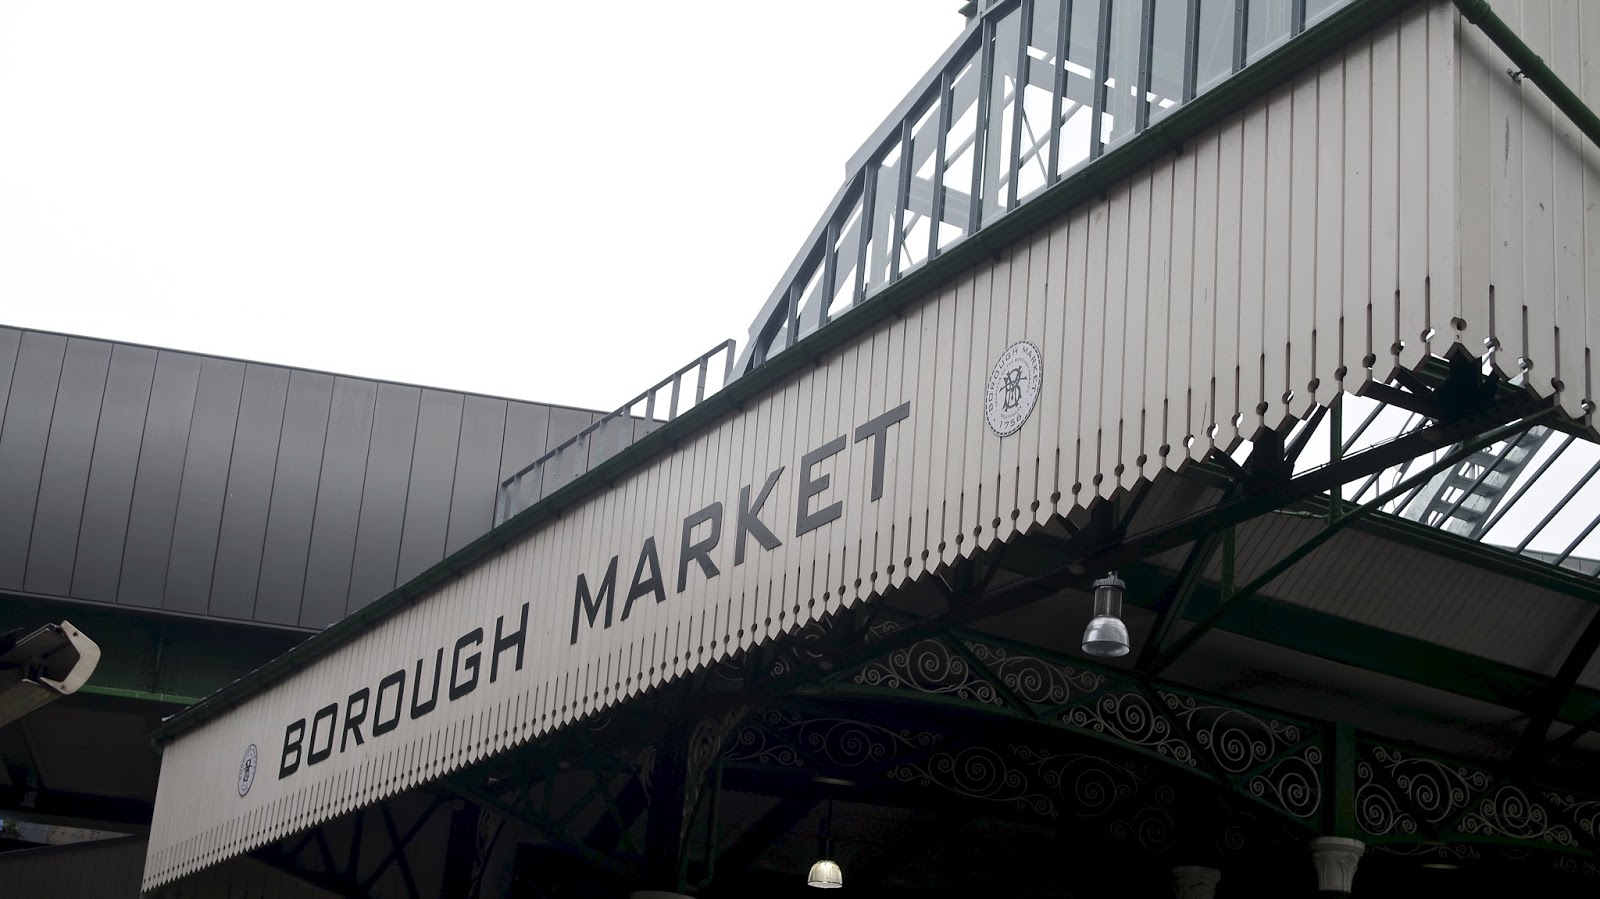 Borough Market Entrance